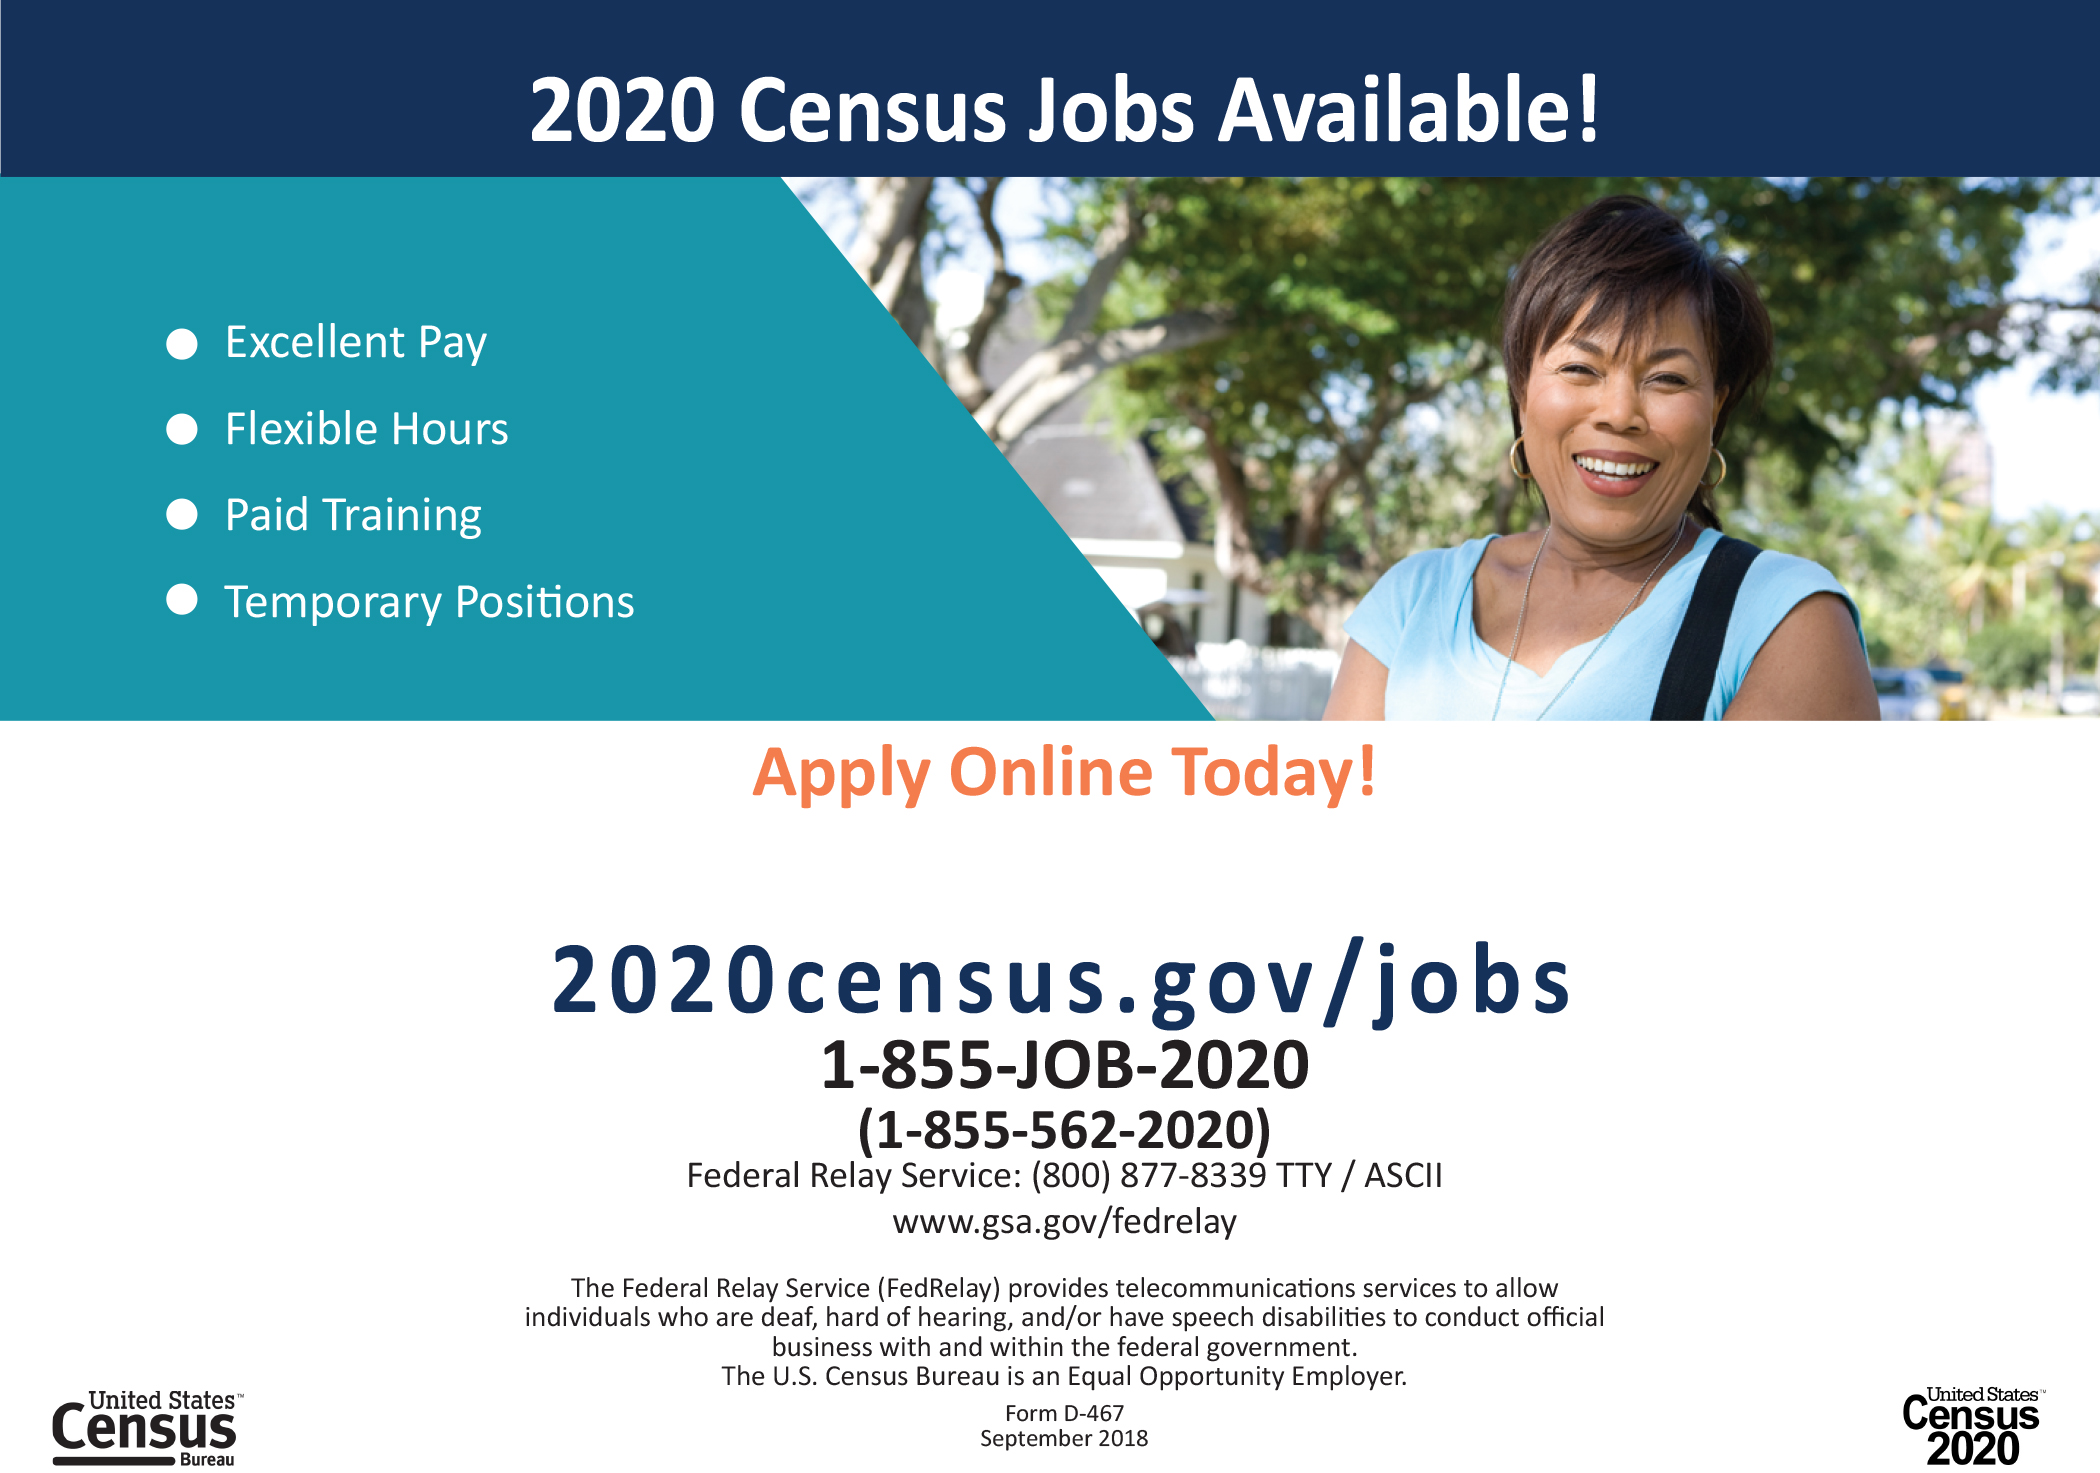 2020 Census Jobs 1